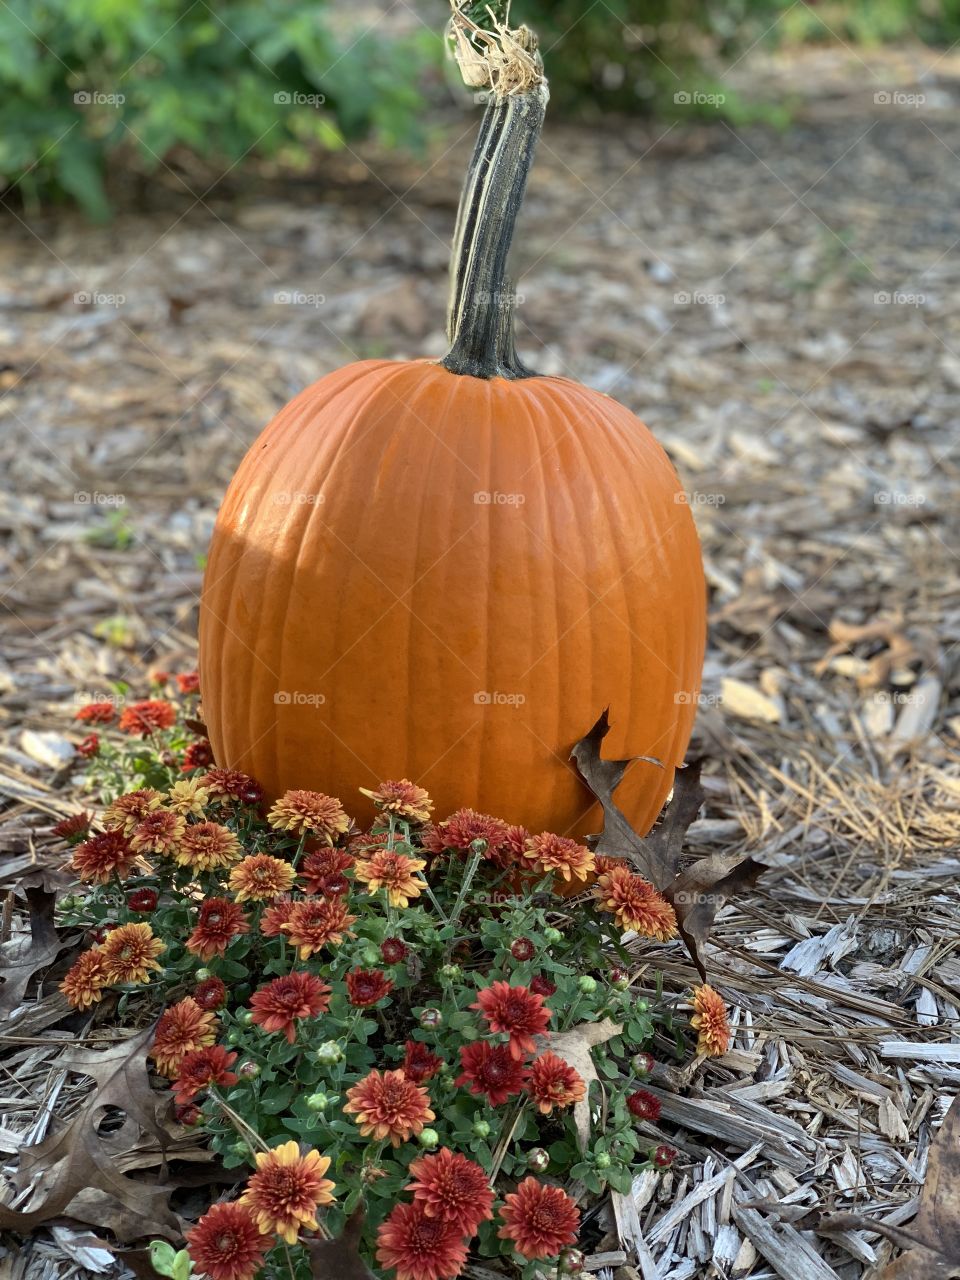 It’s a pumpkin season!